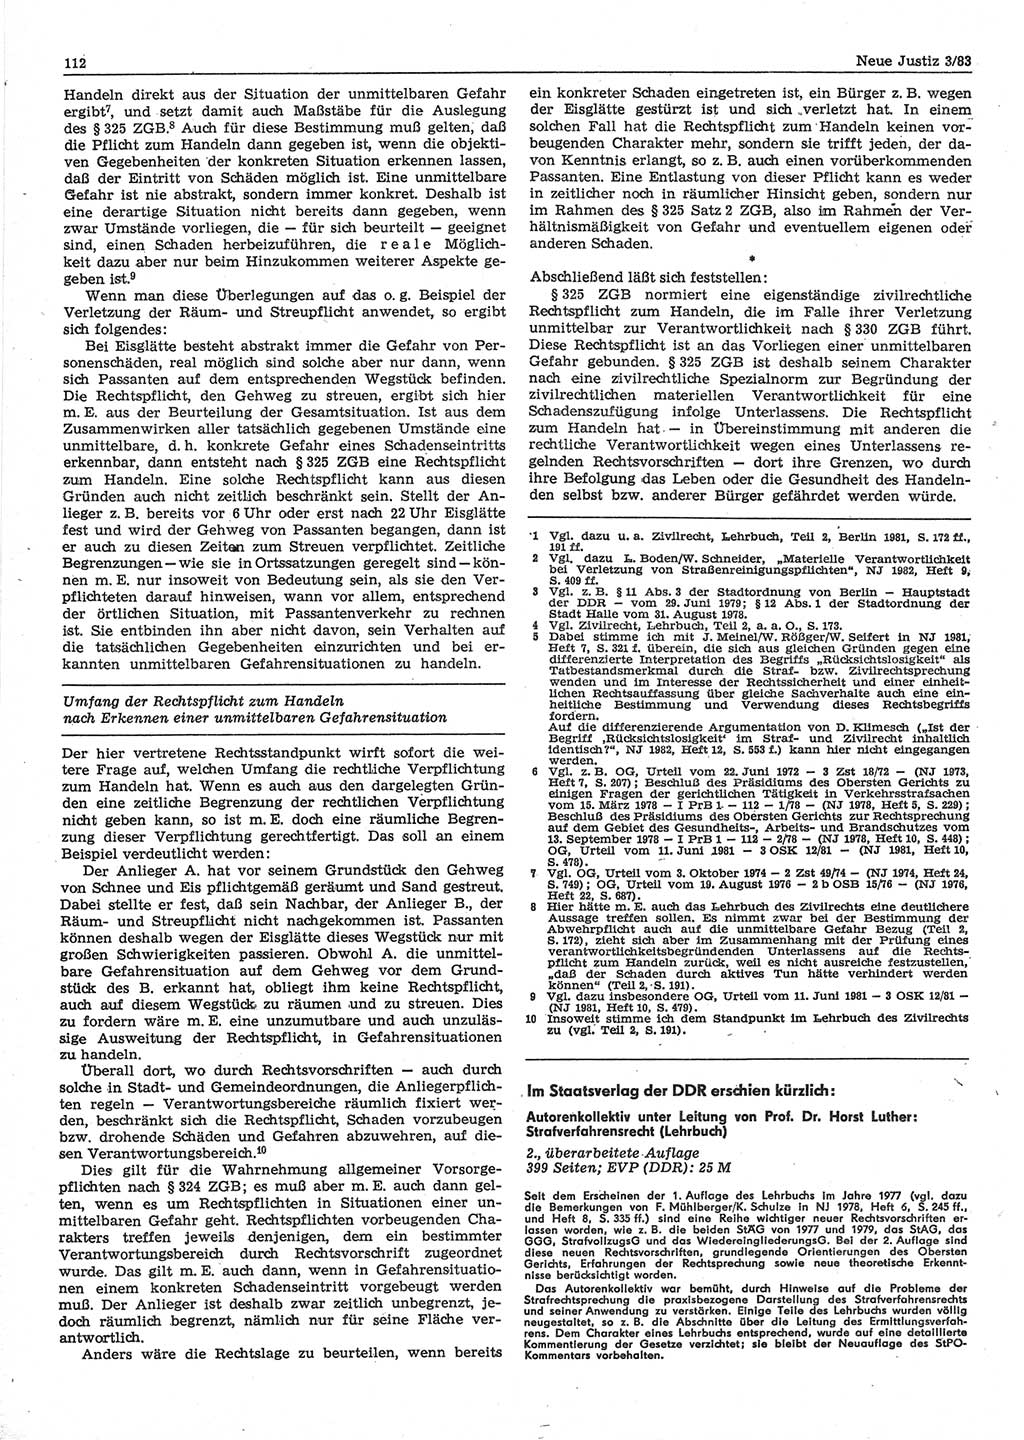 Neue Justiz (NJ), Zeitschrift für sozialistisches Recht und Gesetzlichkeit [Deutsche Demokratische Republik (DDR)], 37. Jahrgang 1983, Seite 112 (NJ DDR 1983, S. 112)